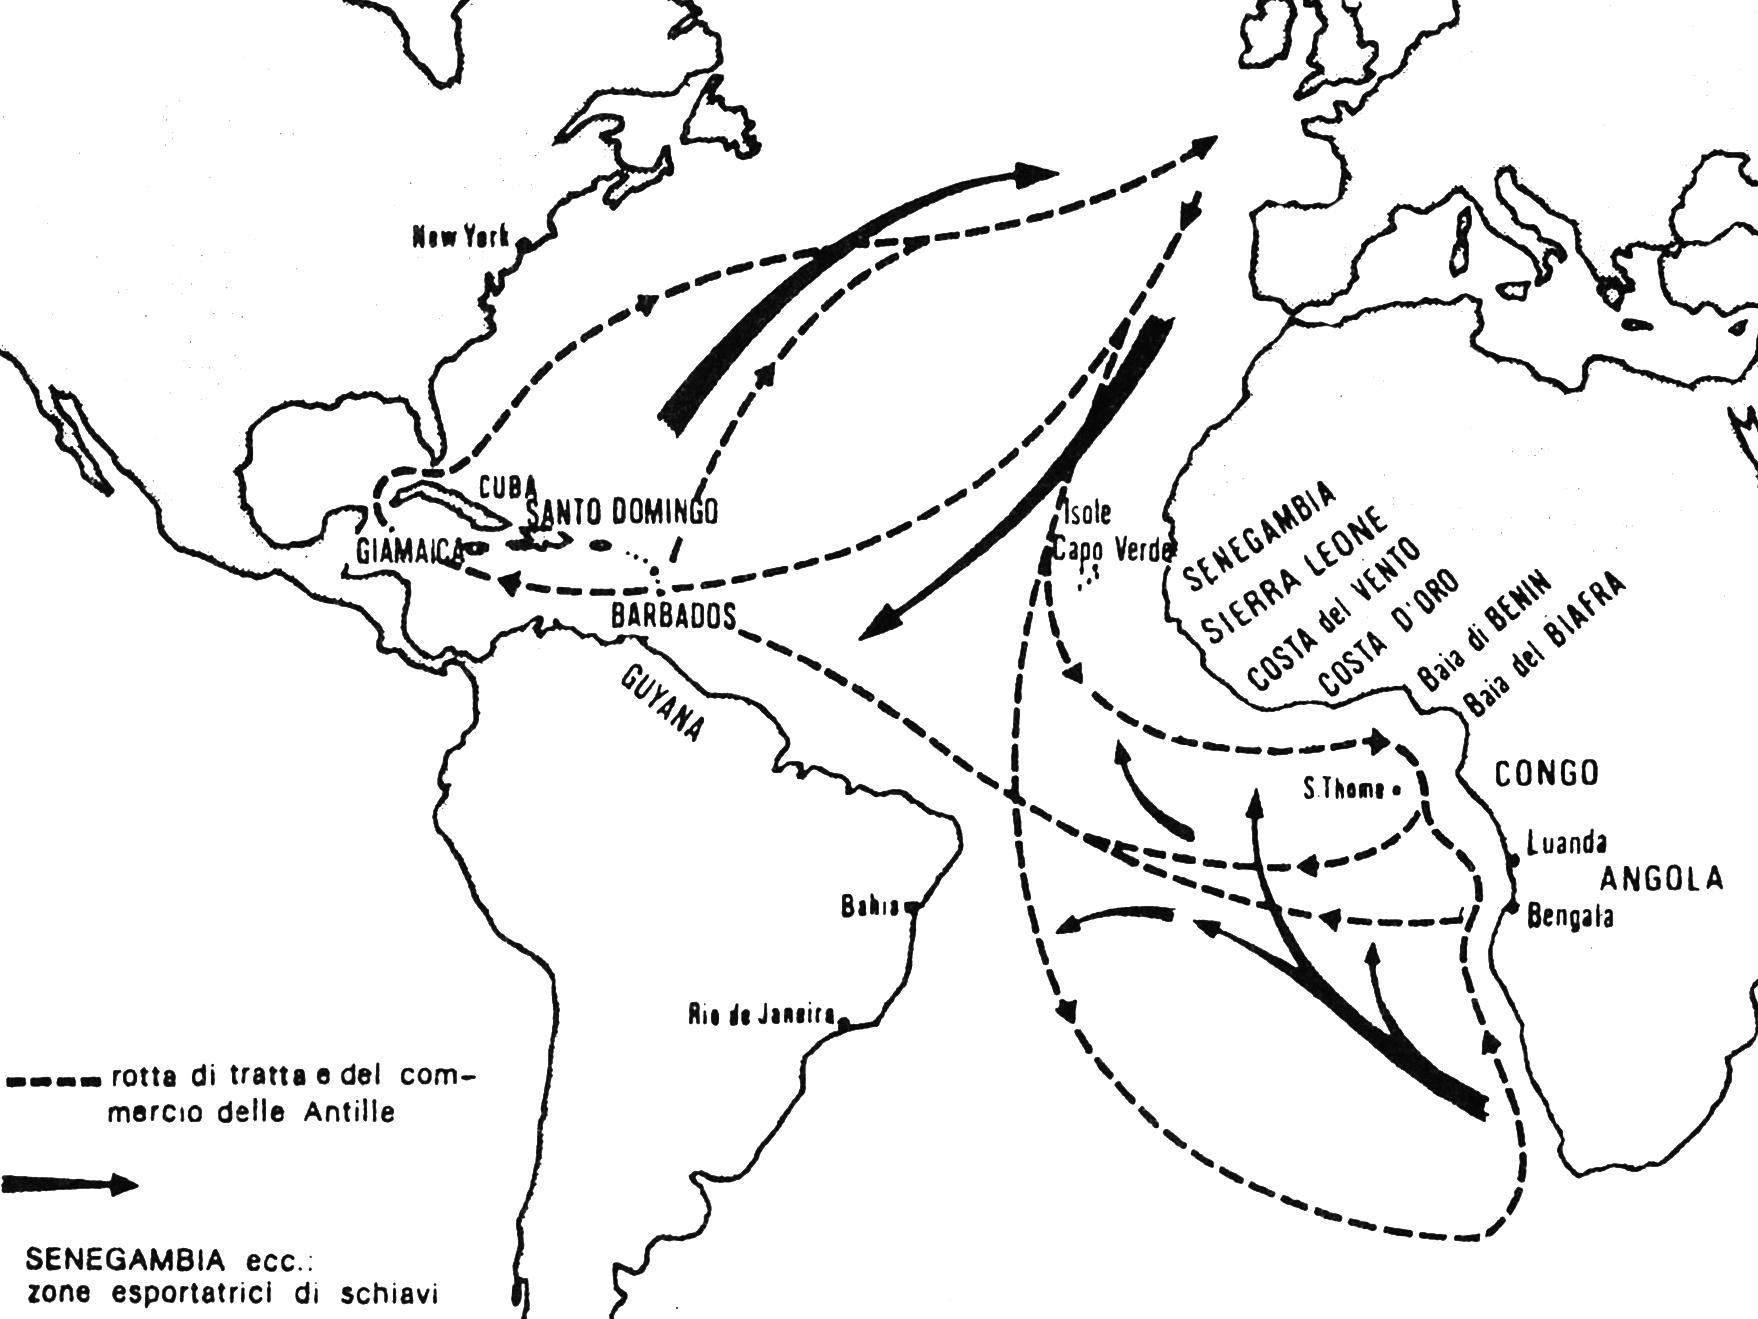 La tratta e il commercio delle Antile nel XVIII secolo